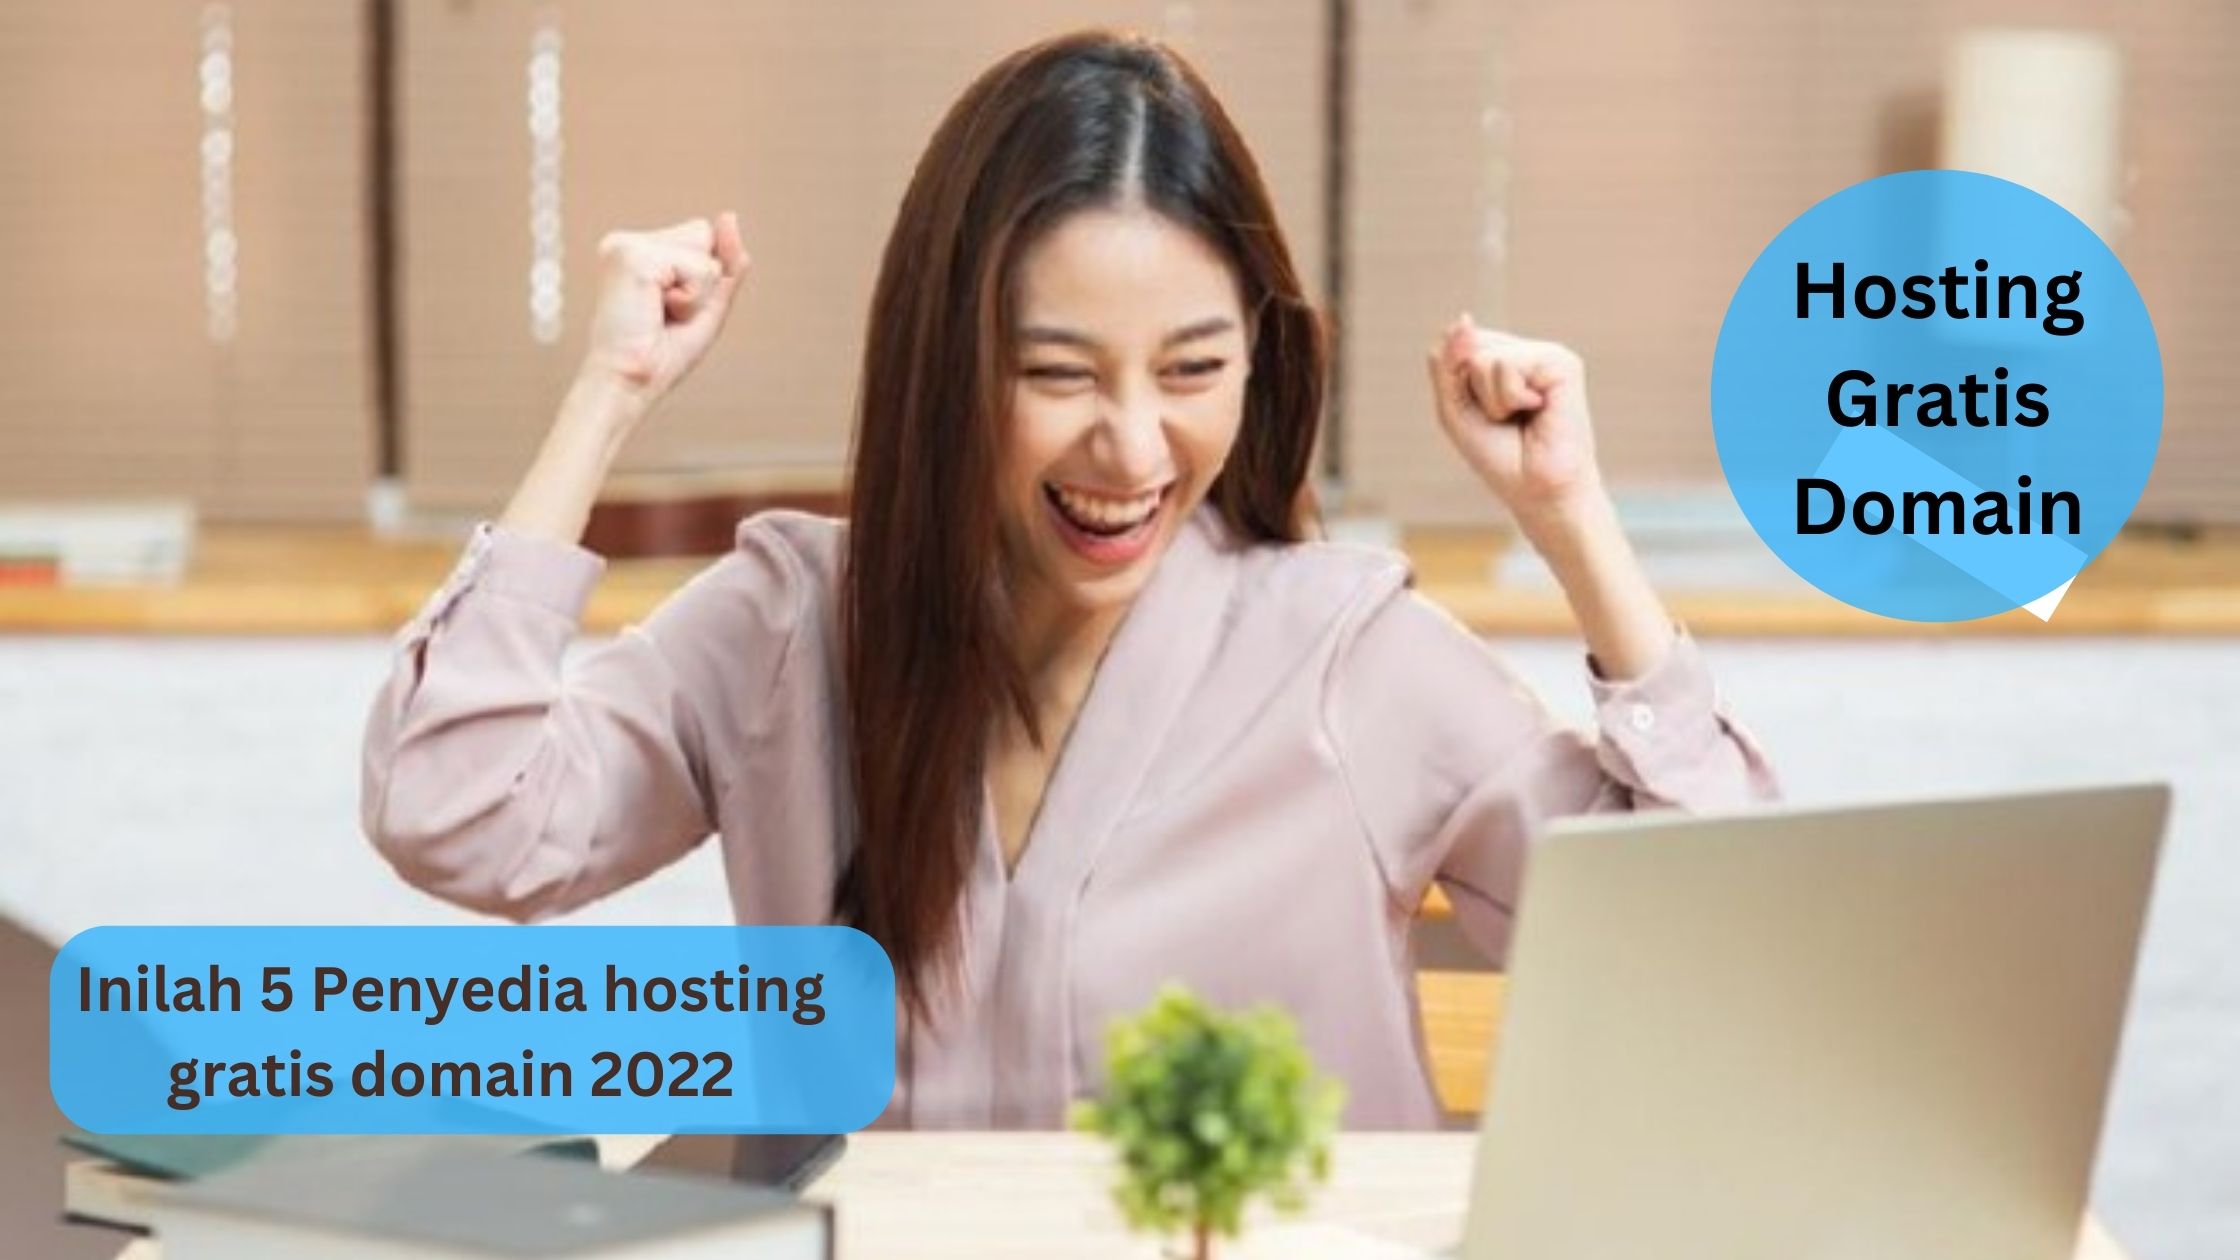 Inilah 5 Penyedia hosting gratis domain 2022